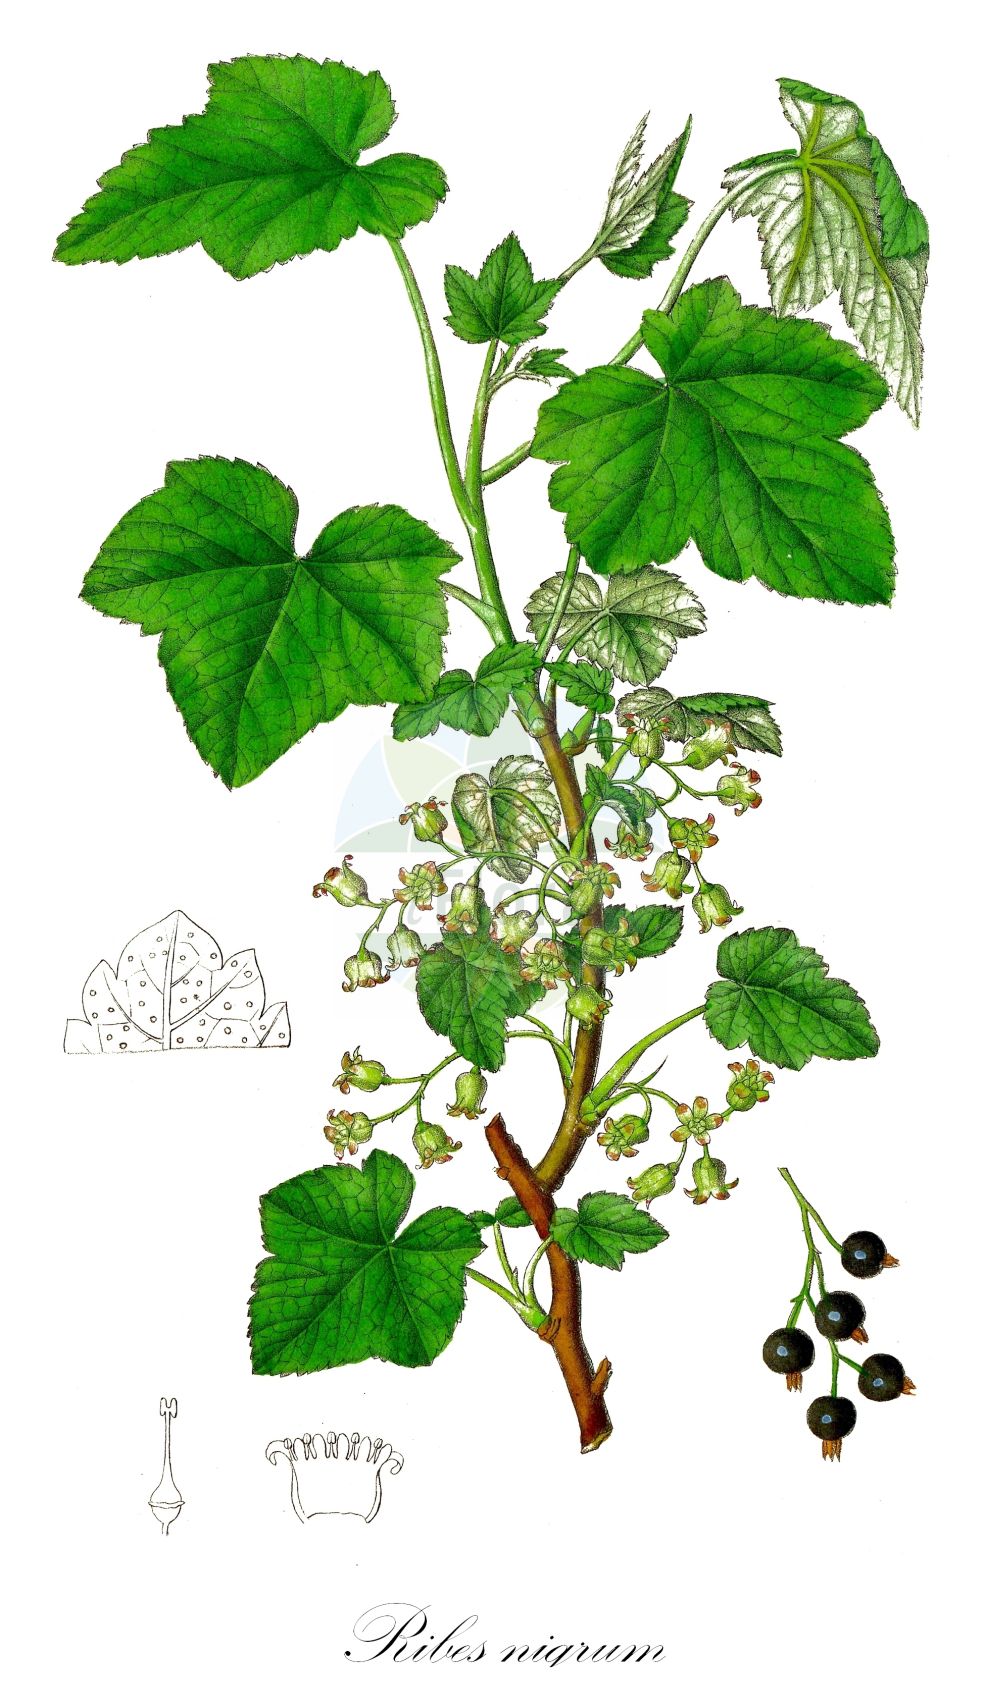 Historische Abbildung von Ribes nigrum (Schwarze Johannisbeere - Black Currant). Das Bild zeigt Blatt, Bluete, Frucht und Same. ---- Historical Drawing of Ribes nigrum (Schwarze Johannisbeere - Black Currant). The image is showing leaf, flower, fruit and seed.(Ribes nigrum,Schwarze Johannisbeere,Black Currant,Ribes nigrum,Schwarze Johannisbeere,Ahlbeere,Gichtbeere,Wanzenbeere,Black Currant,European Black Currant,Ribes,Johannisbeere,Currant,Grossulariaceae,Stachelbeergewächse,Gooseberry family,Blatt,Bluete,Frucht,Same,leaf,flower,fruit,seed,Dietrich (1833-1844))